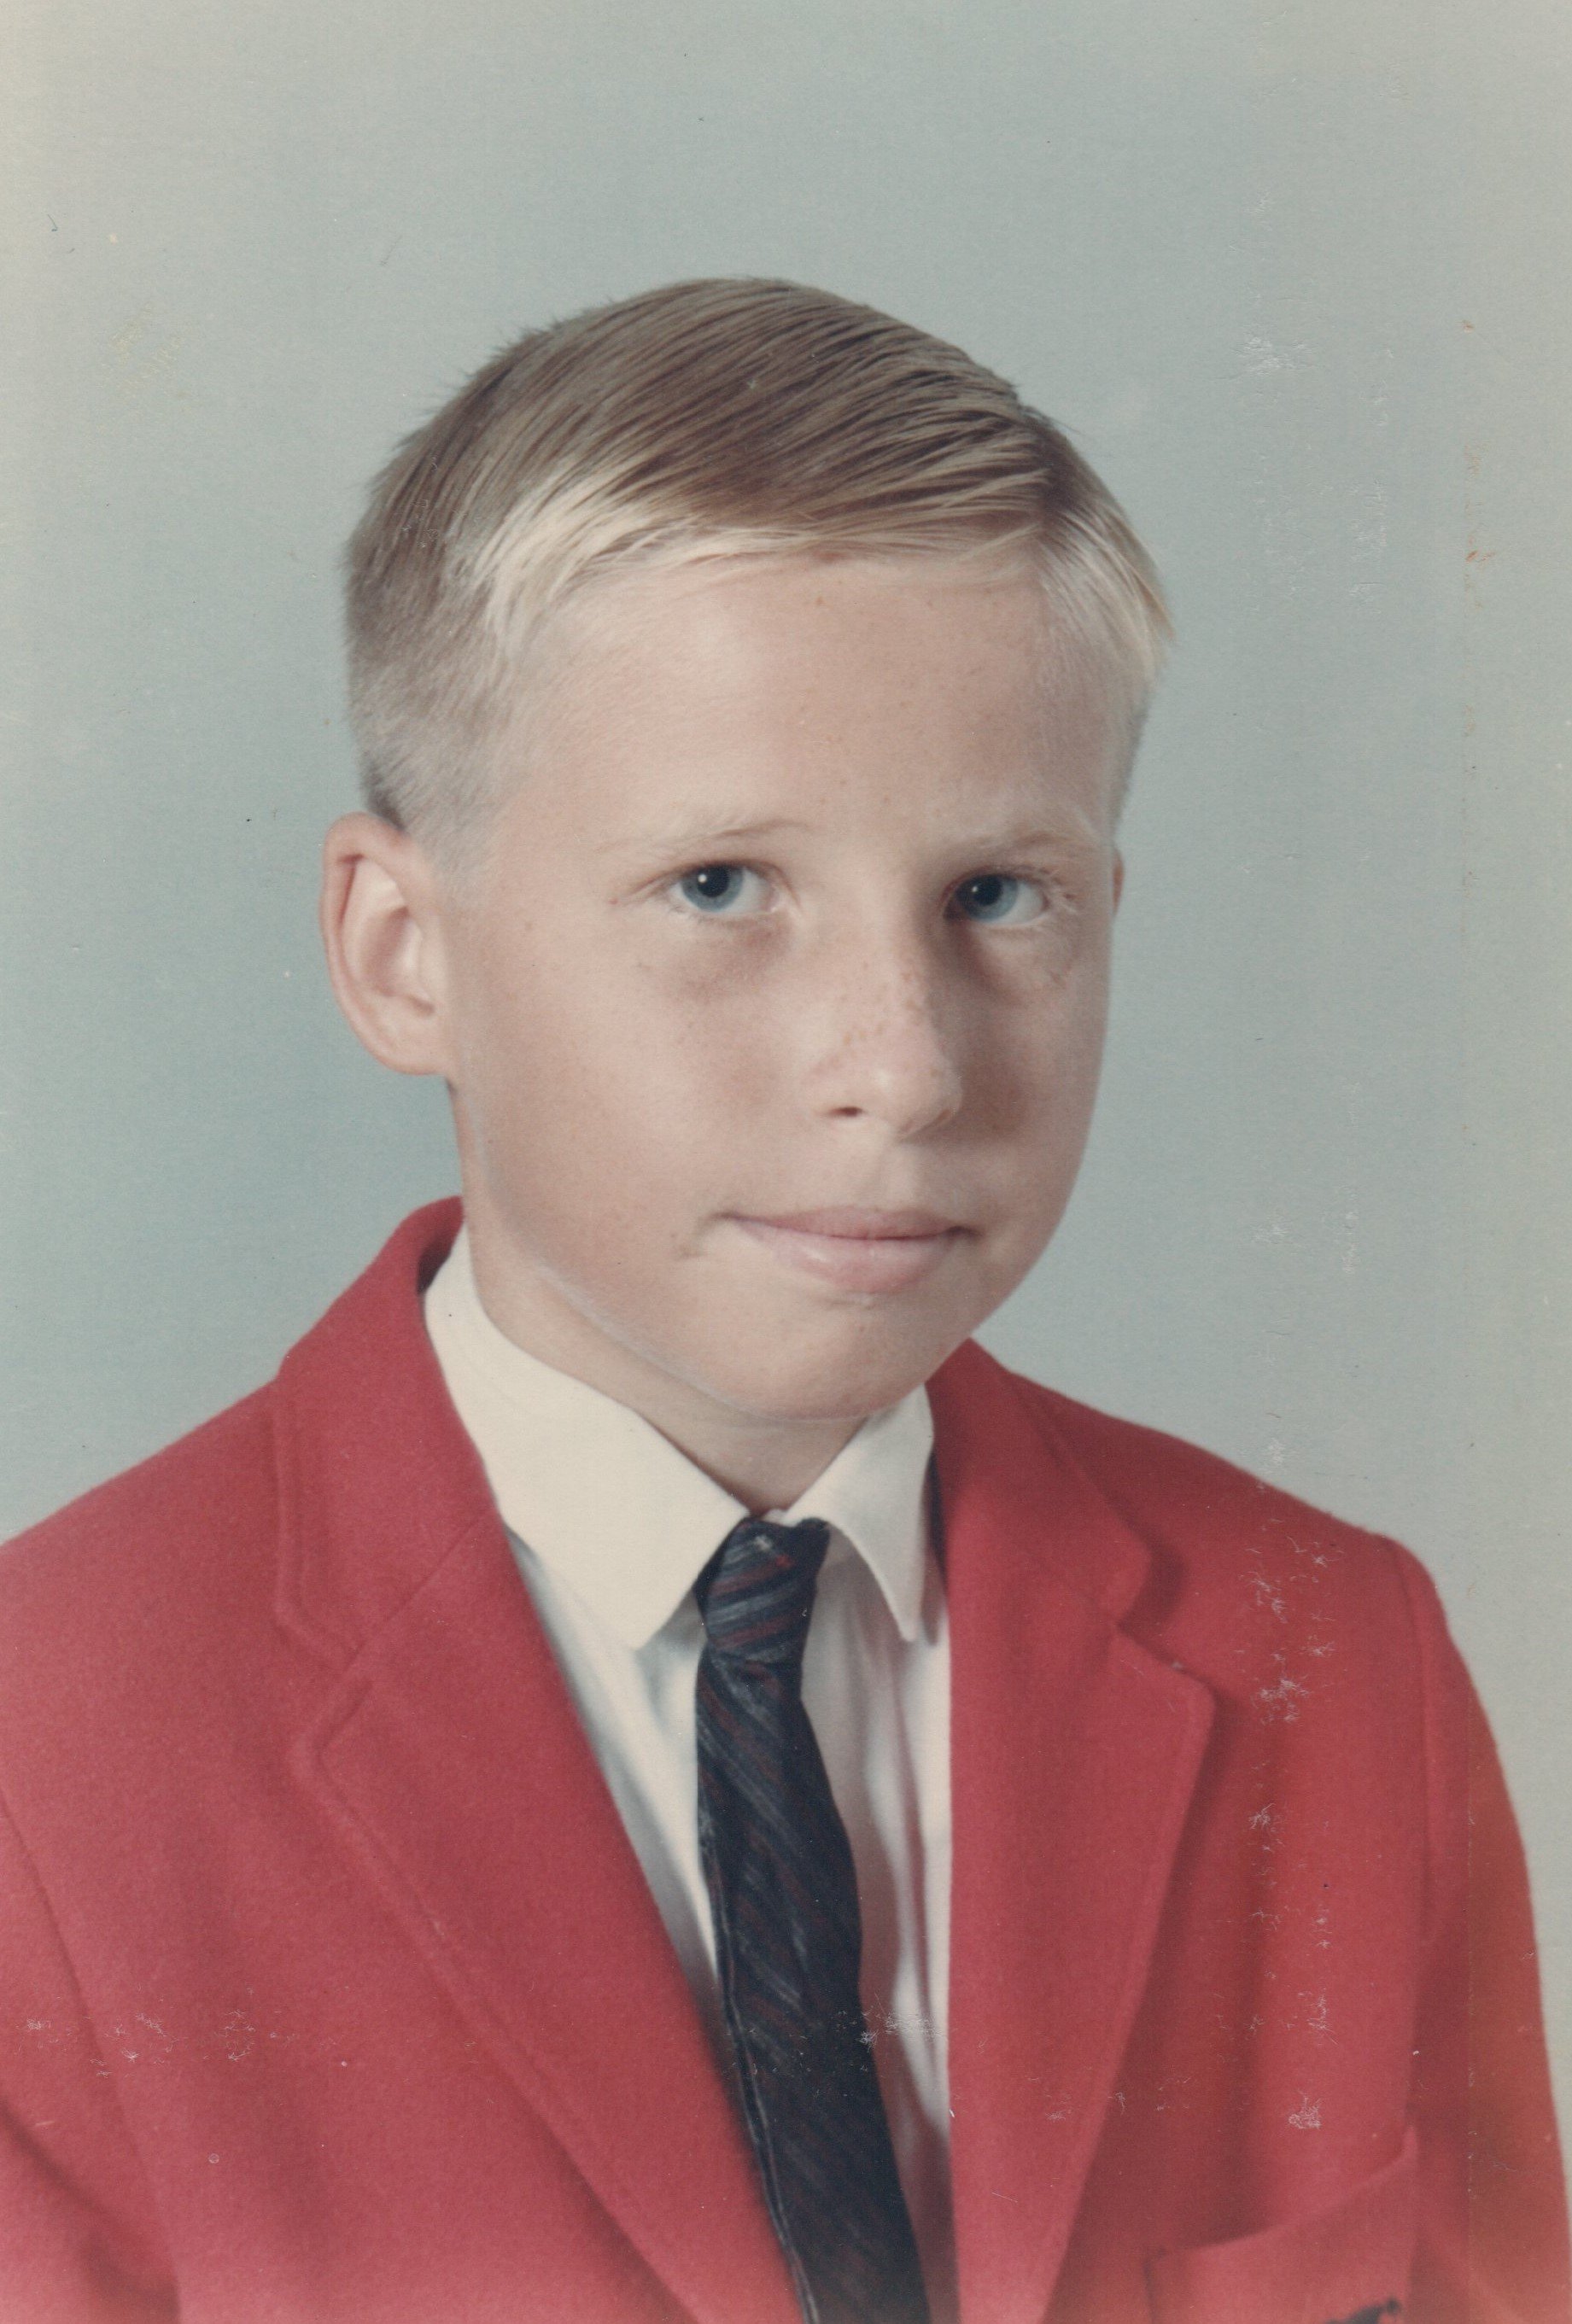 John in seventh grade, 1965